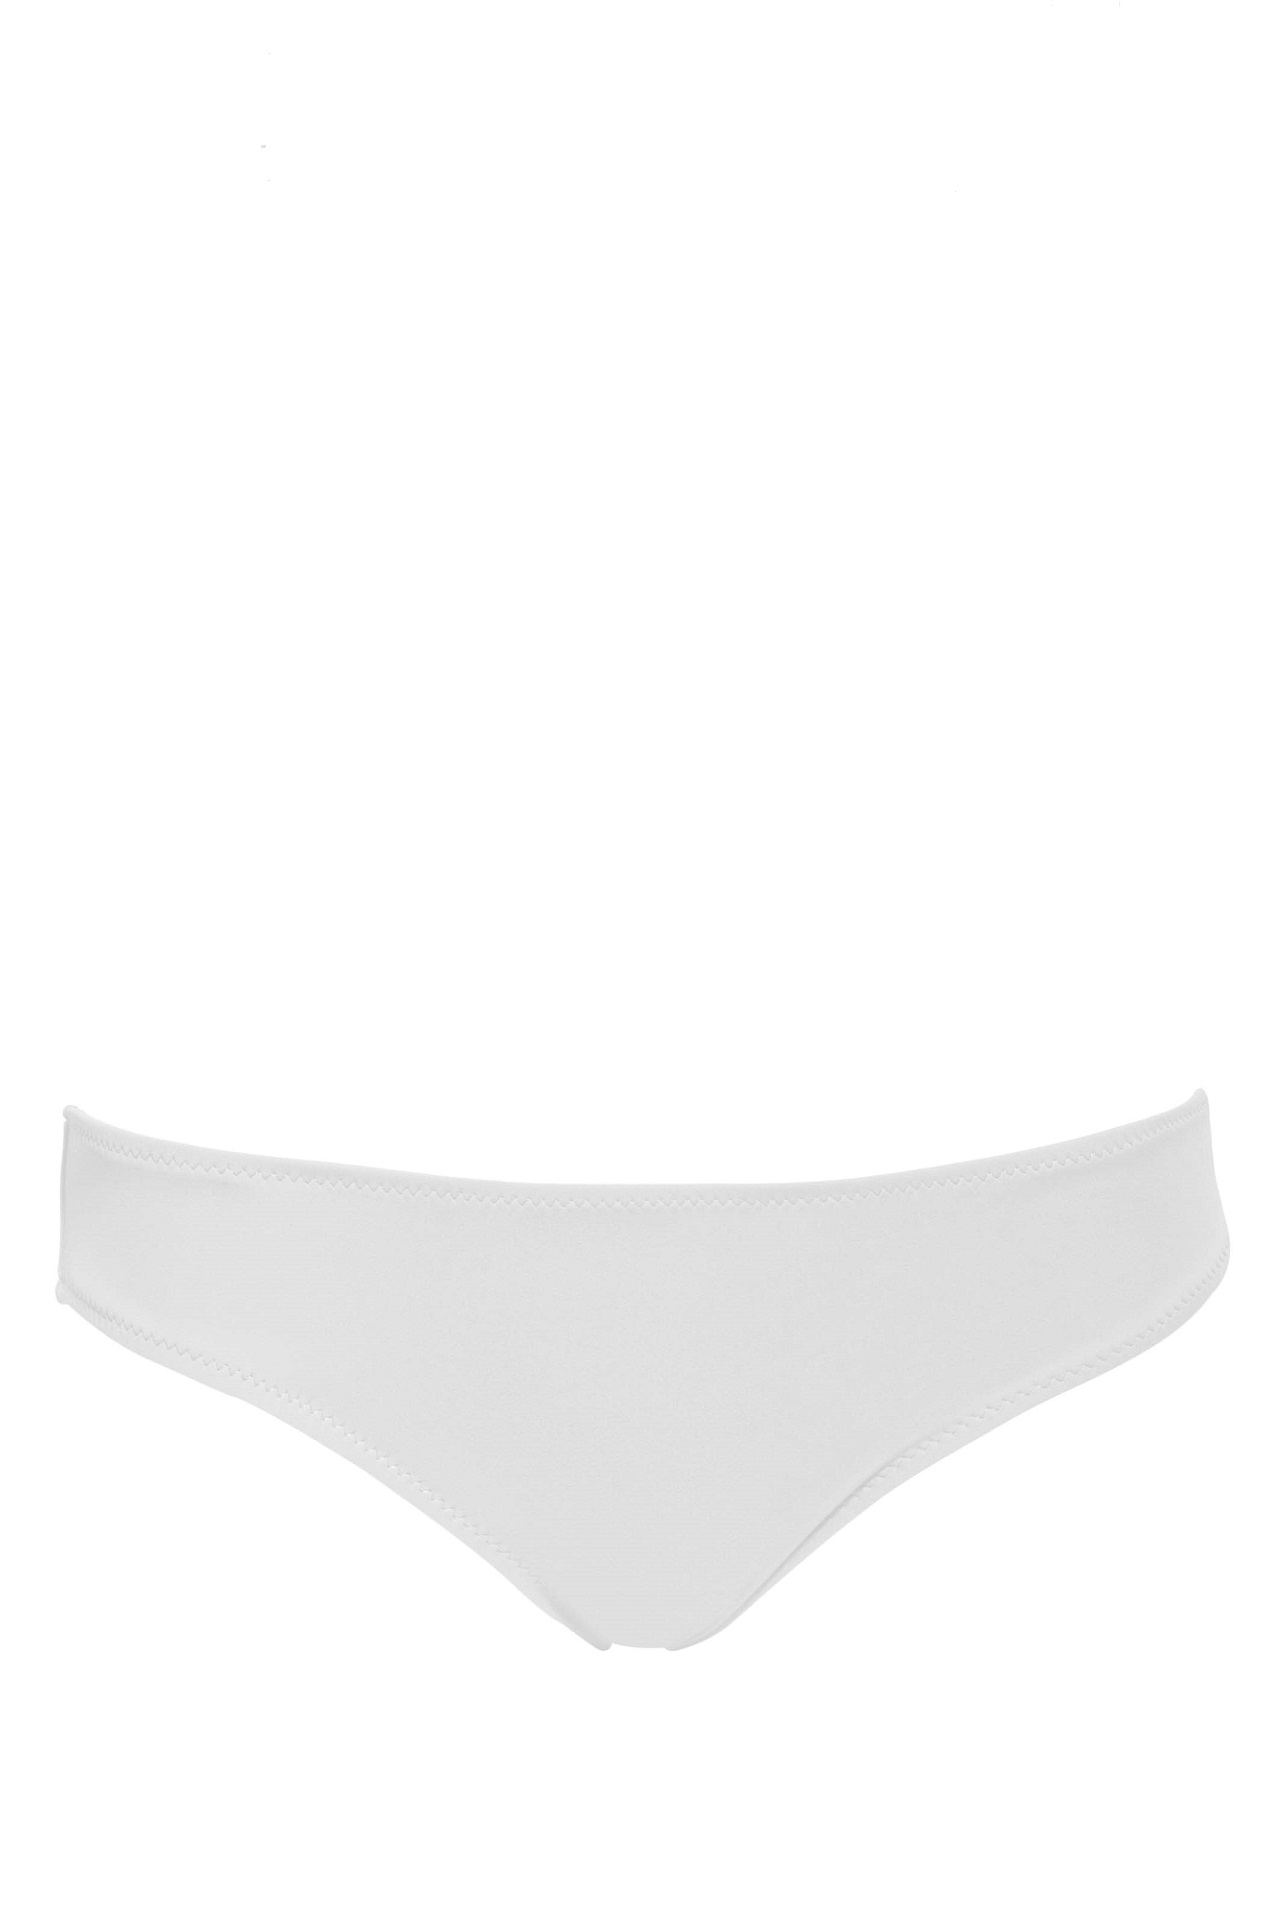 Phax White Full Coverage Bikini Bottom